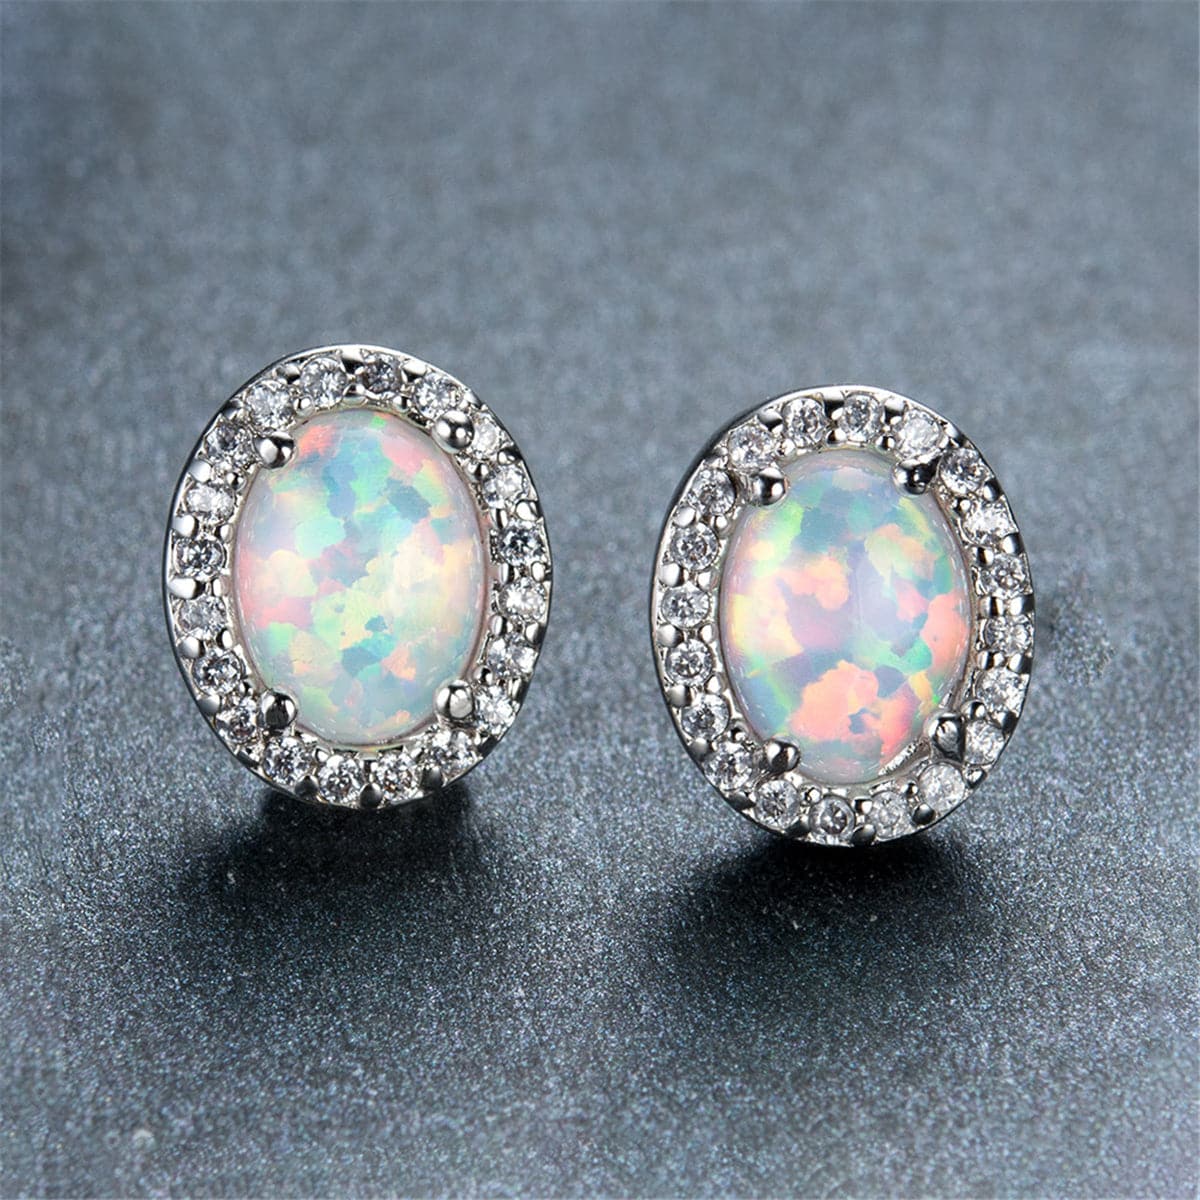 Opal & Cubic Zirconia Oval Halo Stud Earrings